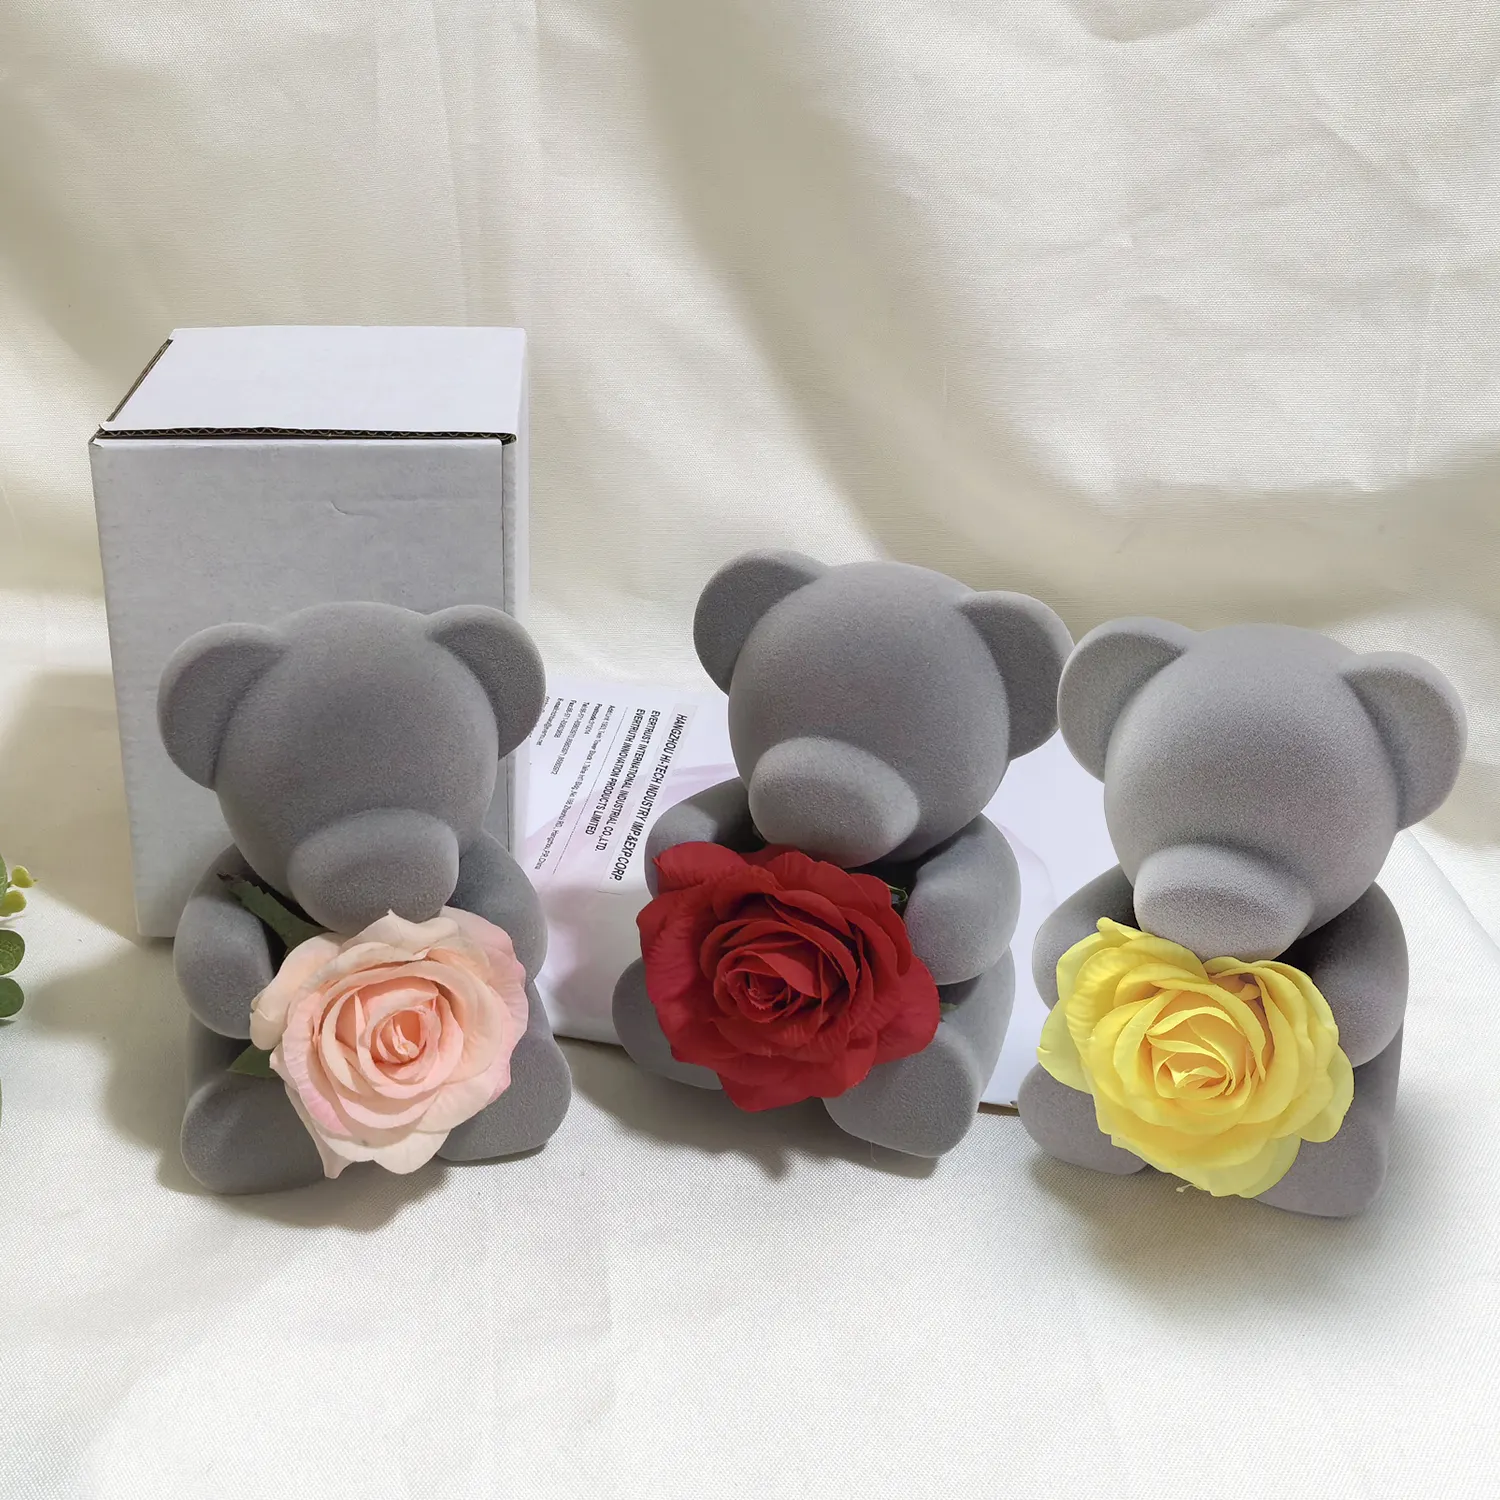 Cadeau de Saint Valentin flocage ours poupée préservé savon artificiel Rose fleur cadeaux pour femme maman